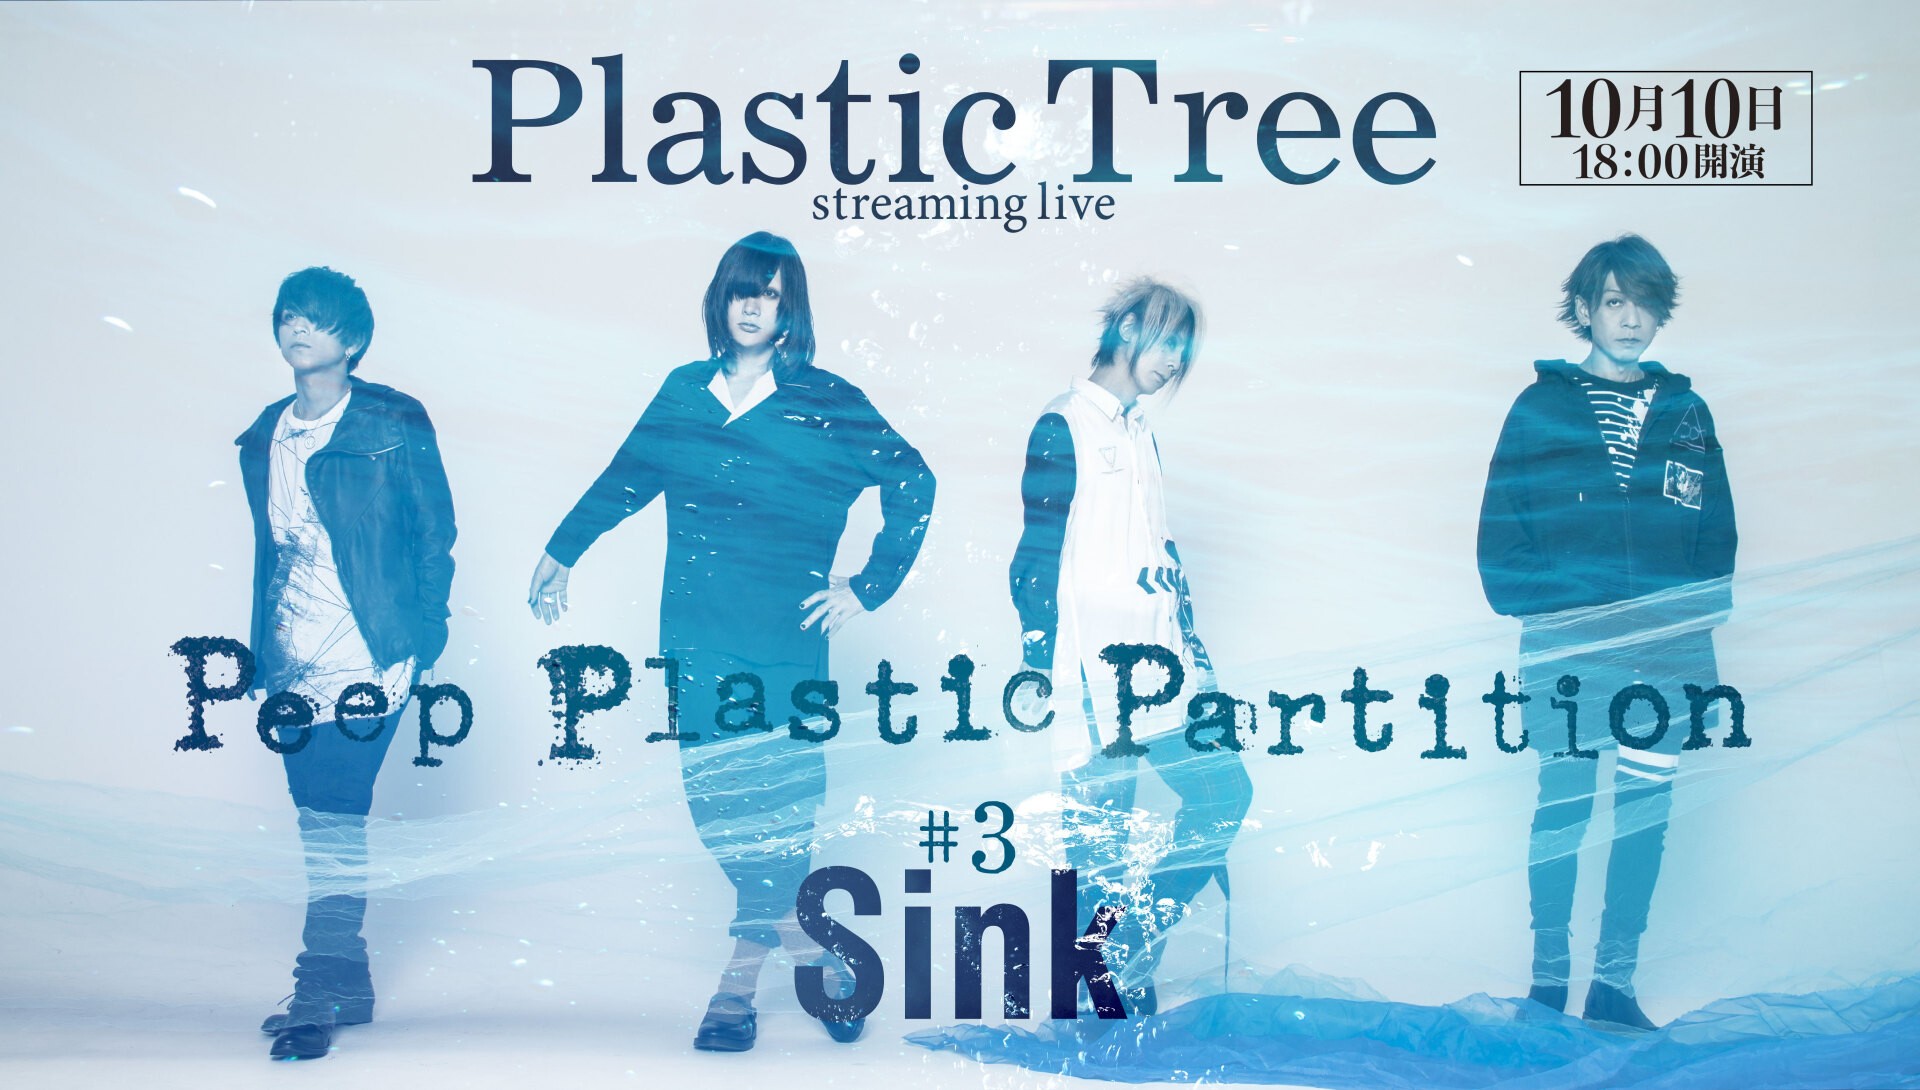 Plastic Tree Peep Plastic Partition